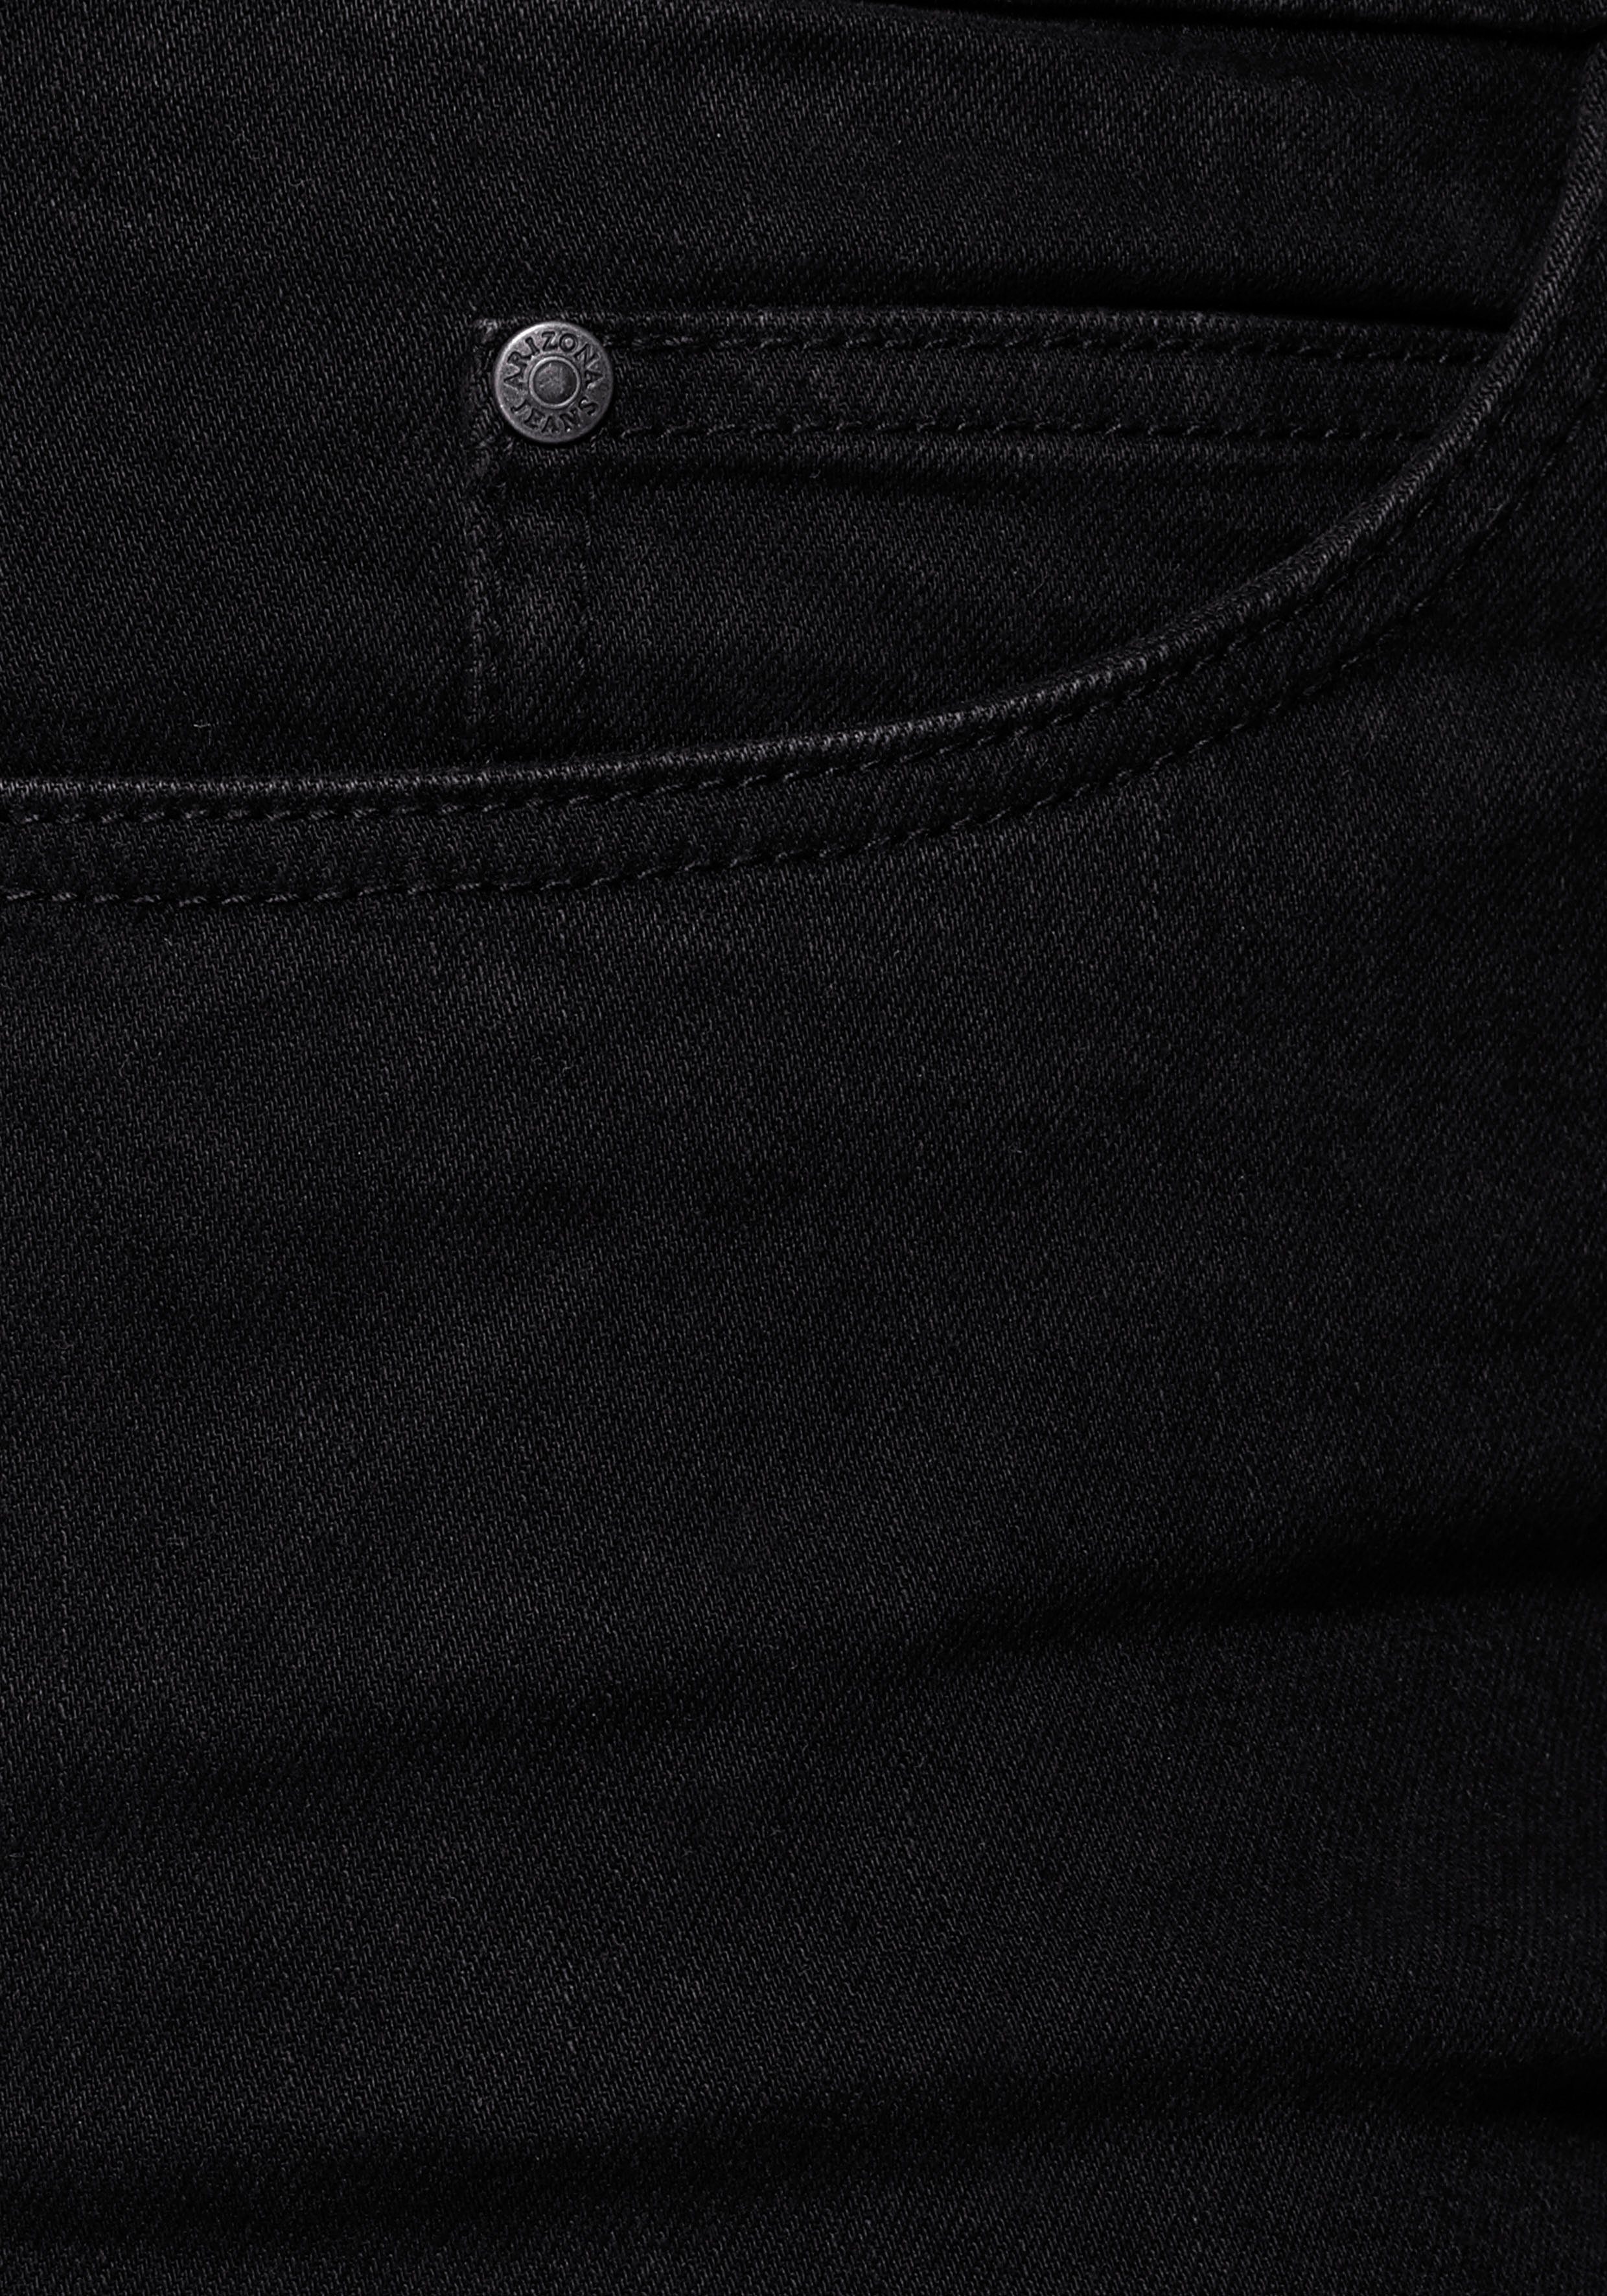 Arizona Straight-Jeans Dehnbund mit Curve-Collection black bequemen